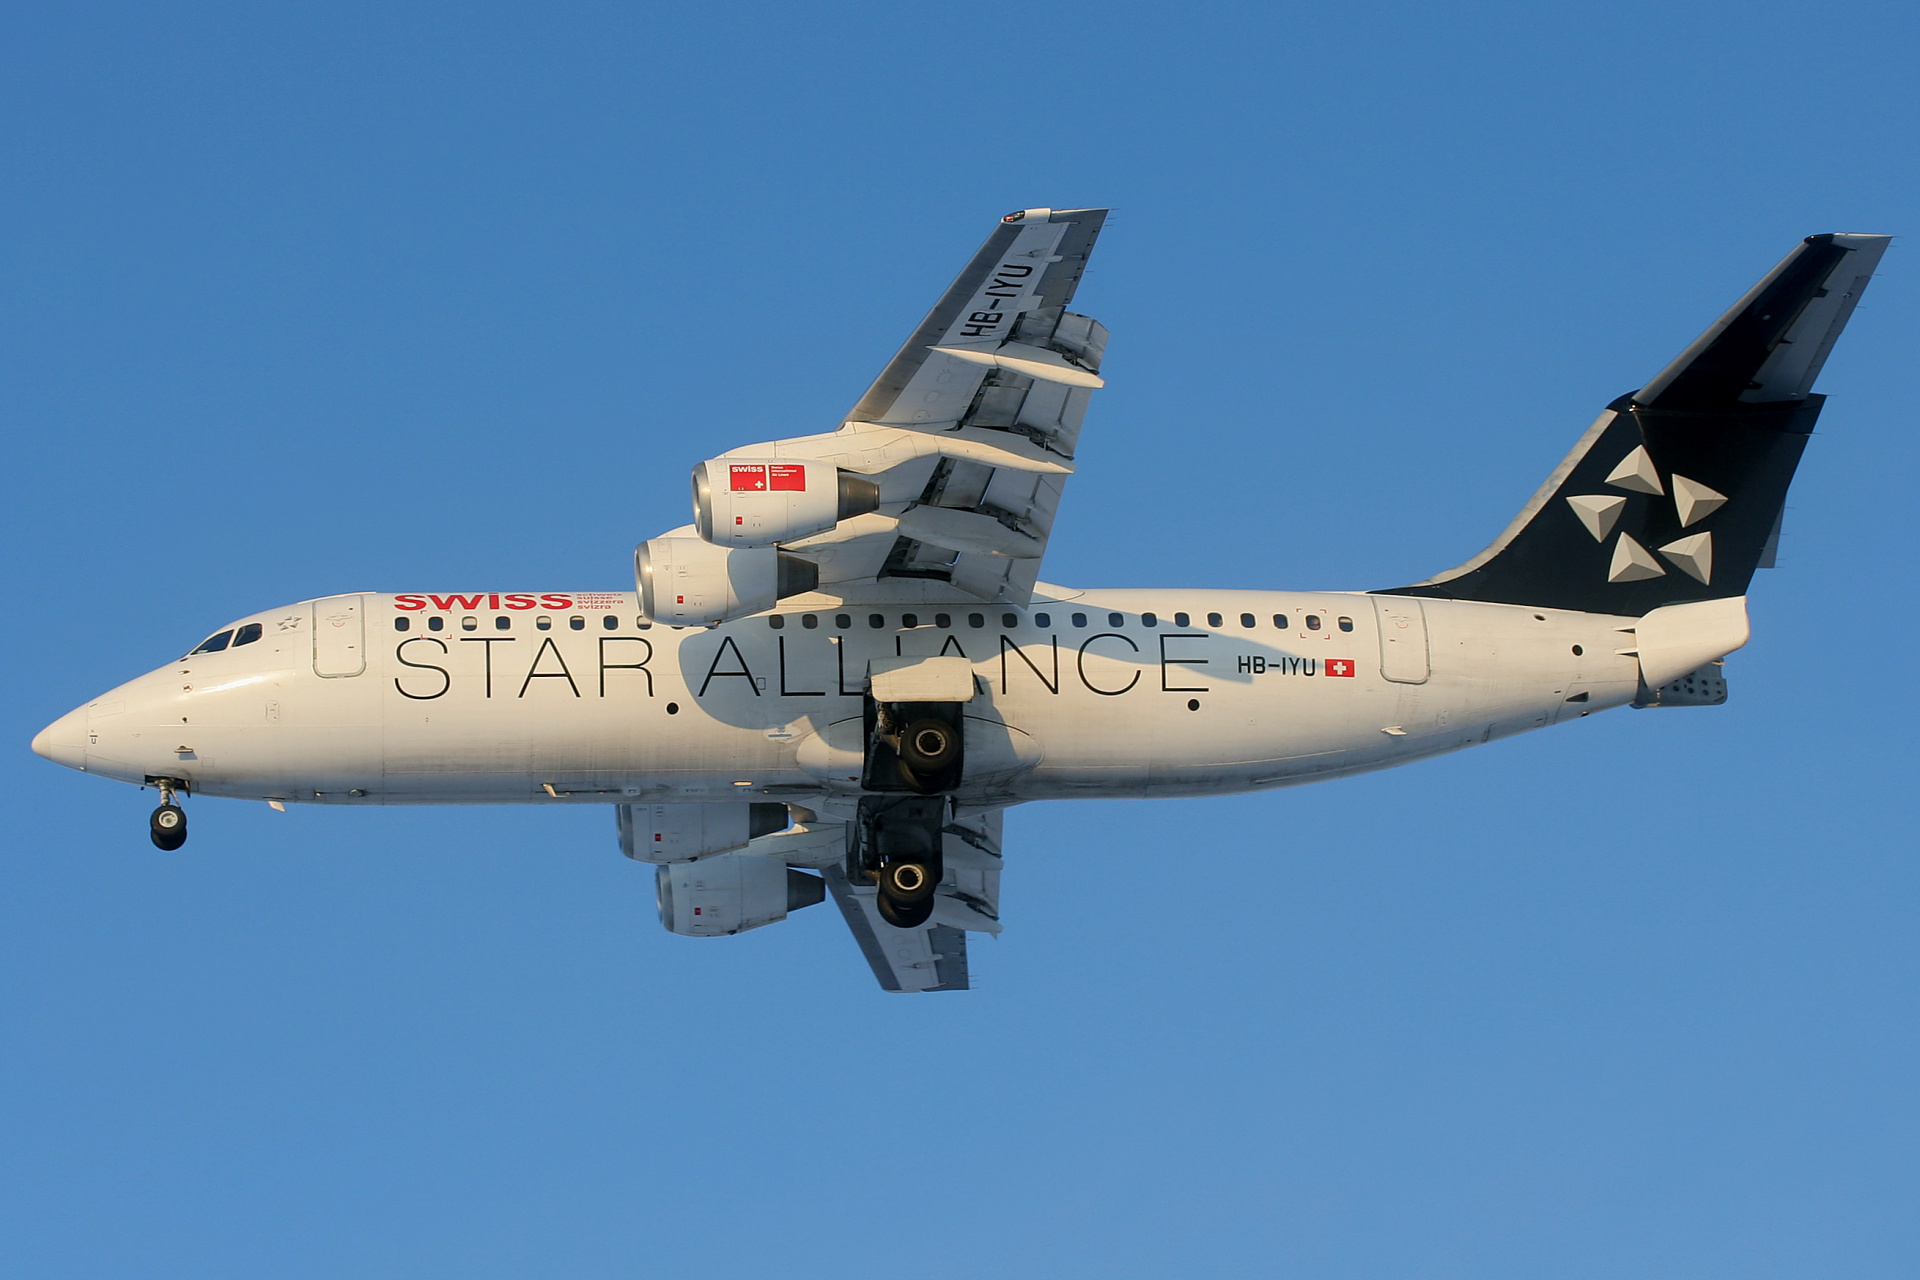 HB-IYU (malowanie Star Alliance) (Samoloty » Spotting na EPWA » BAe 146 i pochodne wersje » Avro RJ100 » Swiss Global Air Lines)